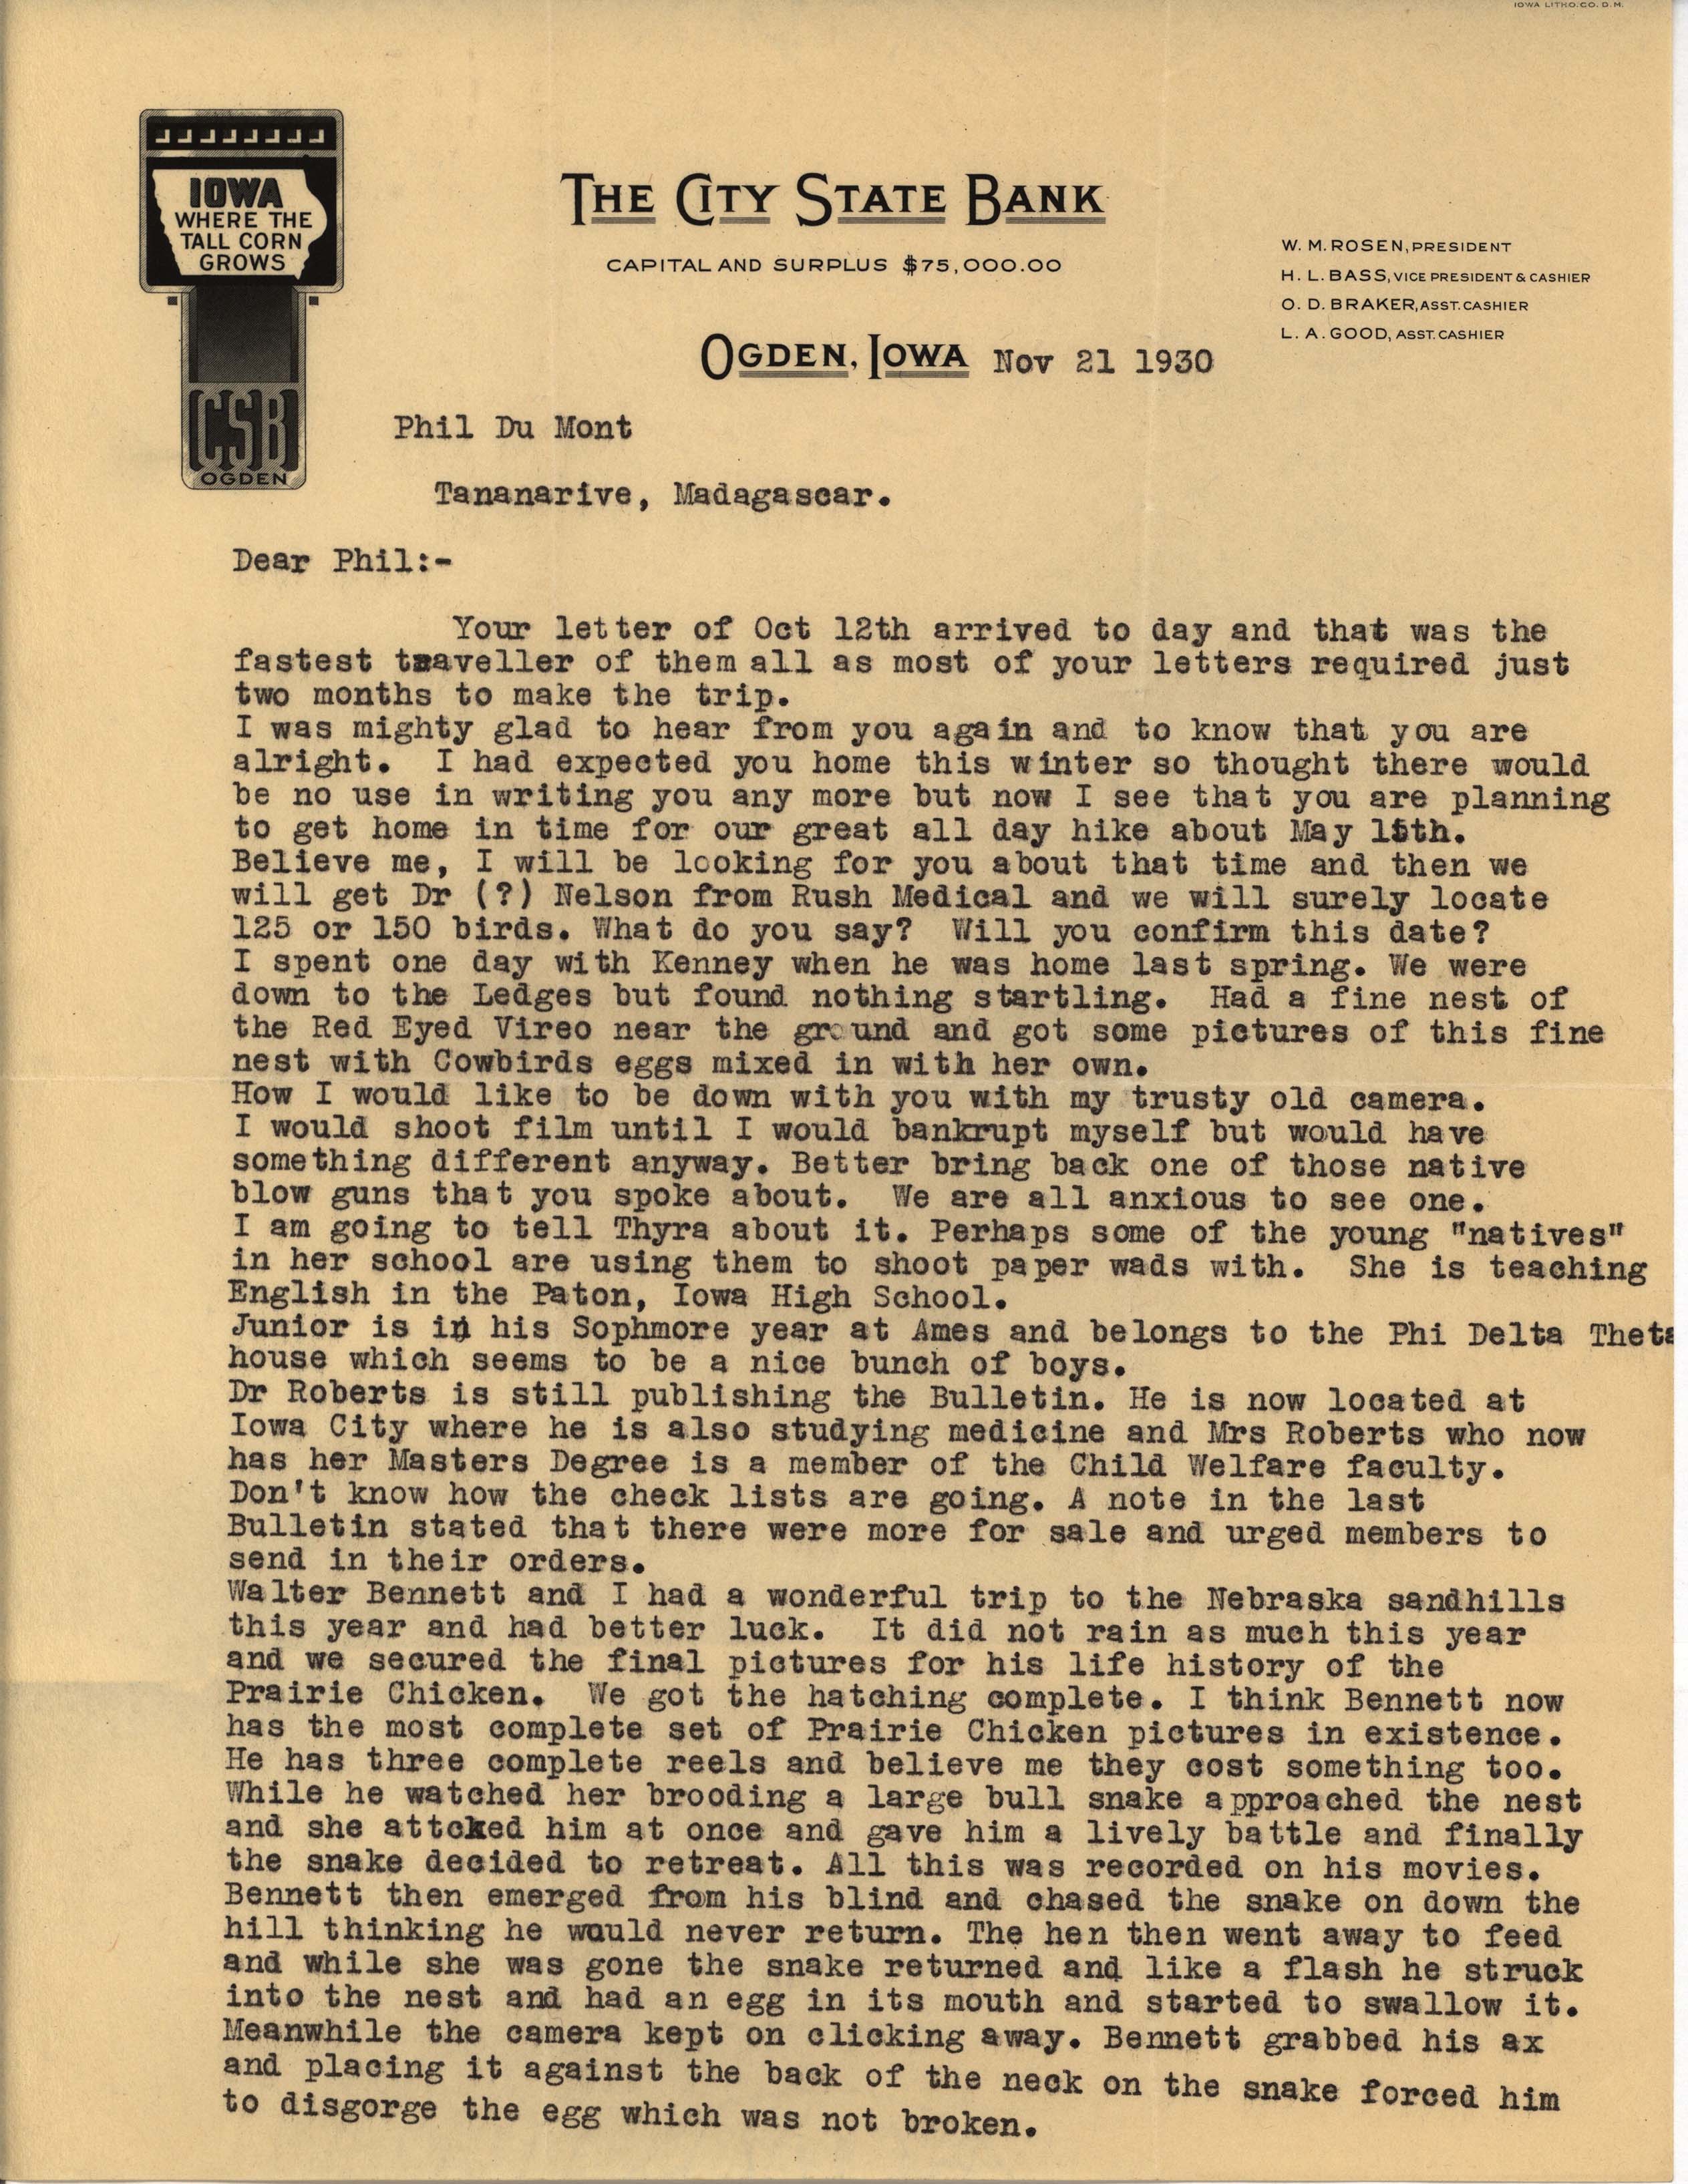 Walter Rosene letter to Philip DuMont regarding Prairie Chicken pictures, November 21, 1930